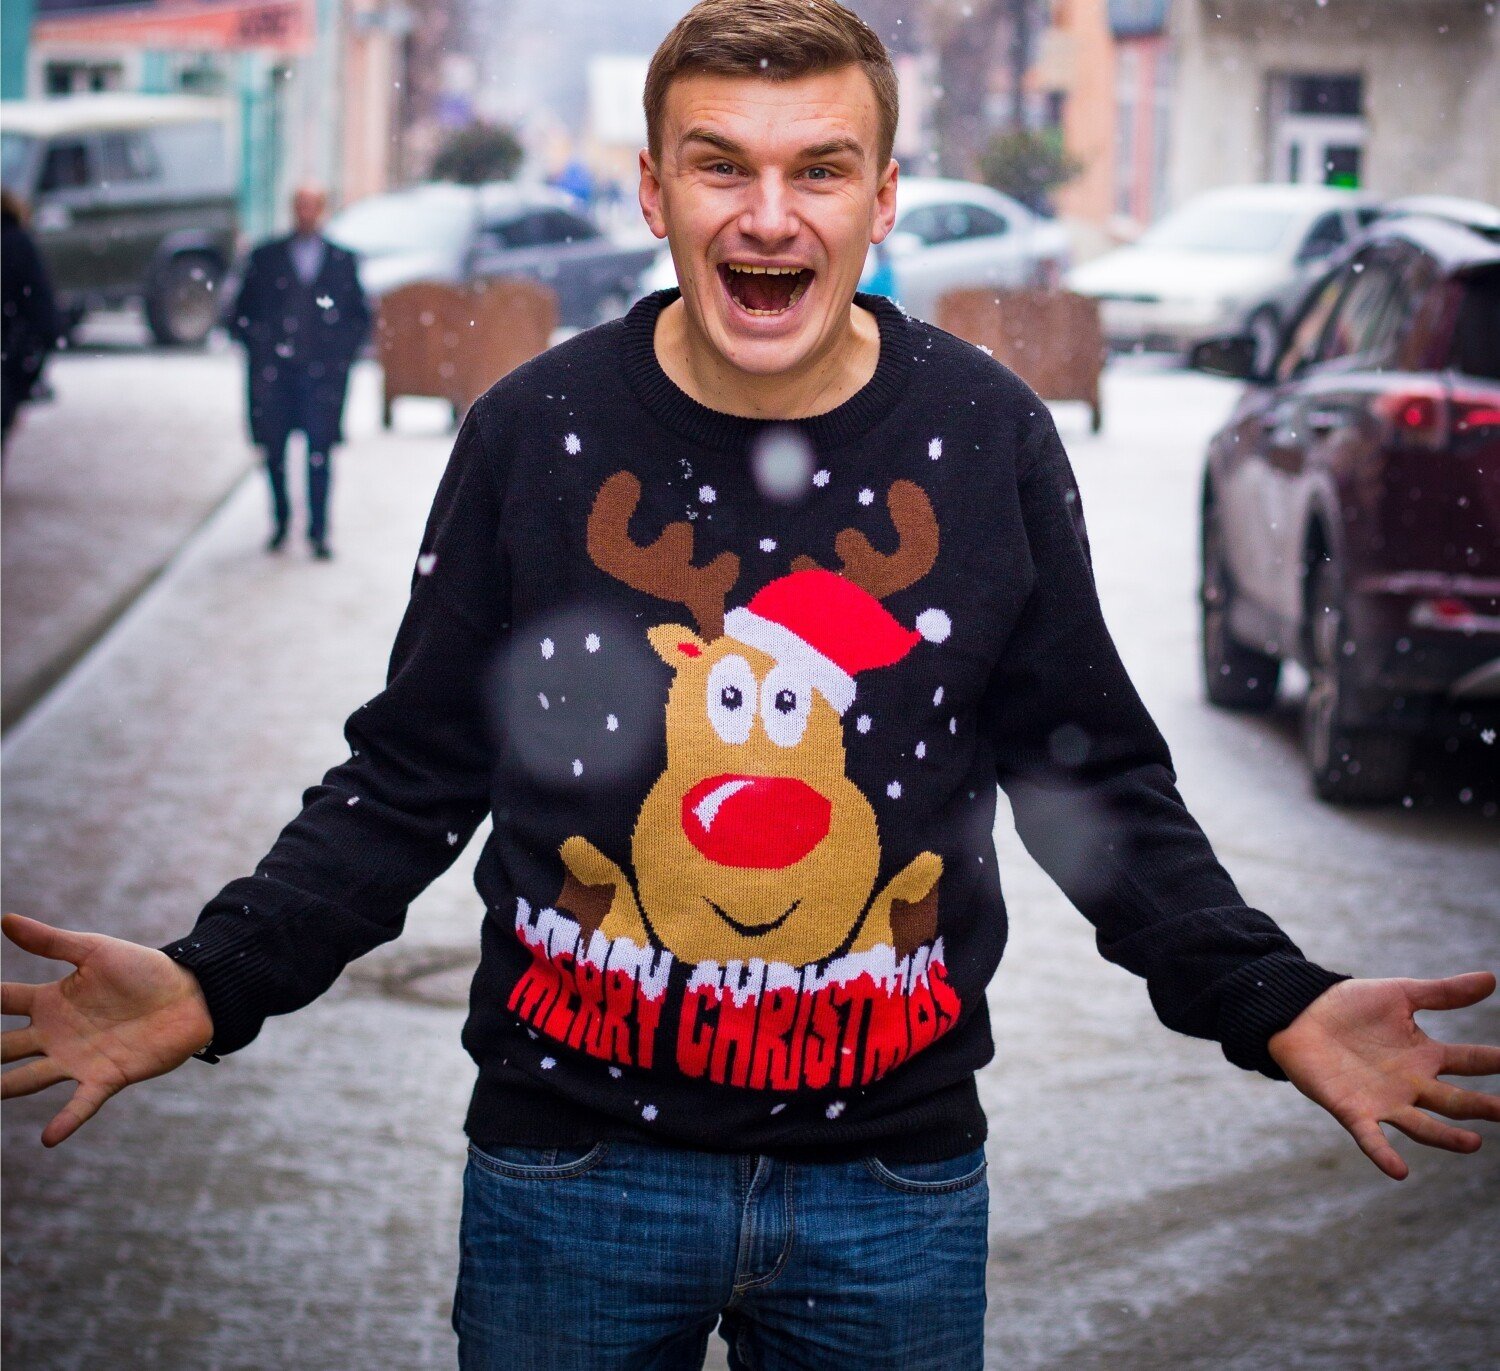 Takie są teraz modne swetry świąteczne damskie i męskie. Oto najbardziej  urocze i zabawne swetry na święta [zdjęcia] | Włocławek Nasze Miasto